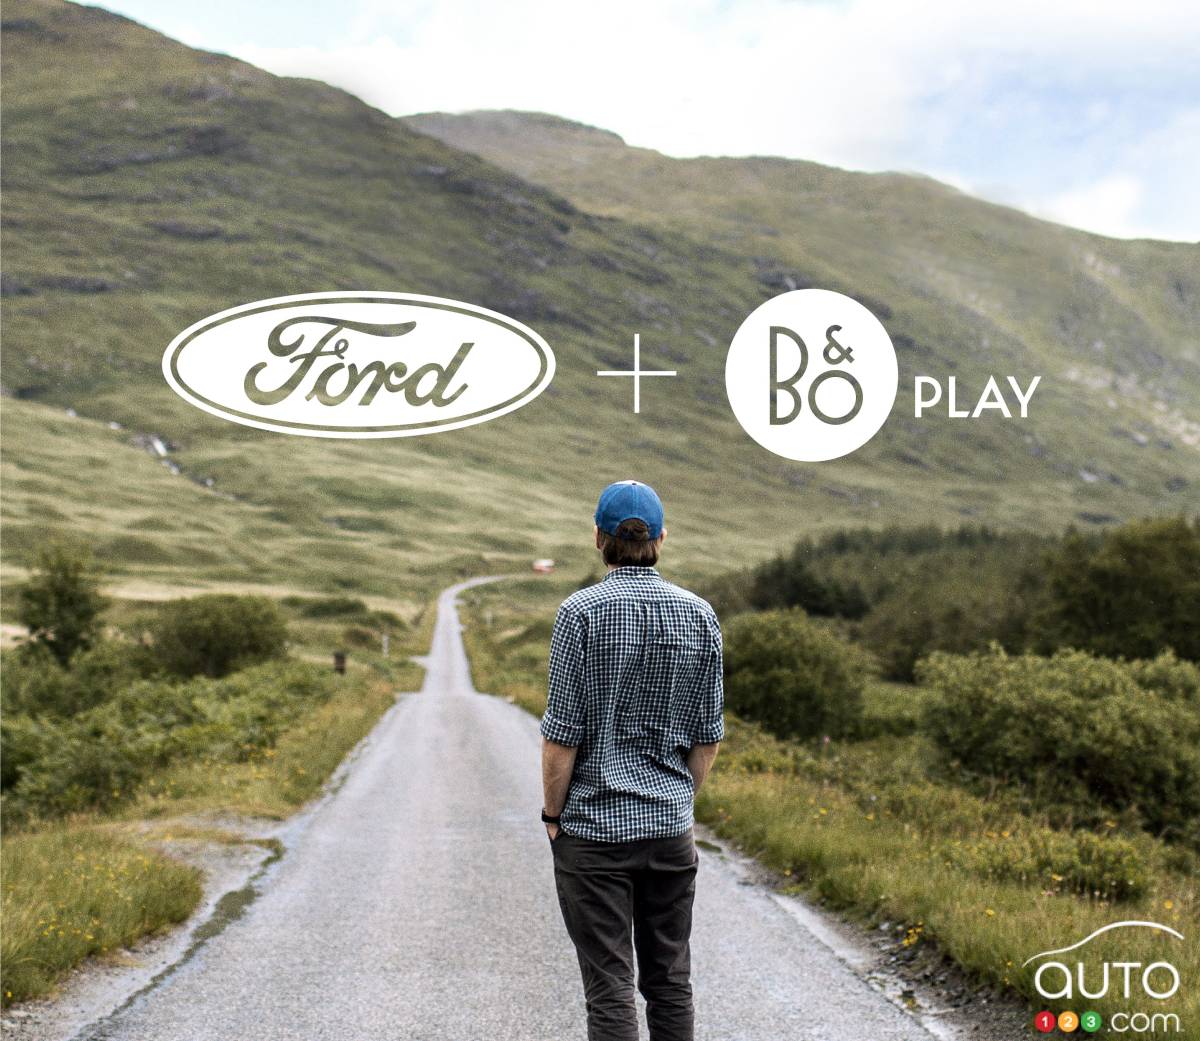 Ford lance B&O PLAY pour une expérience audio magique